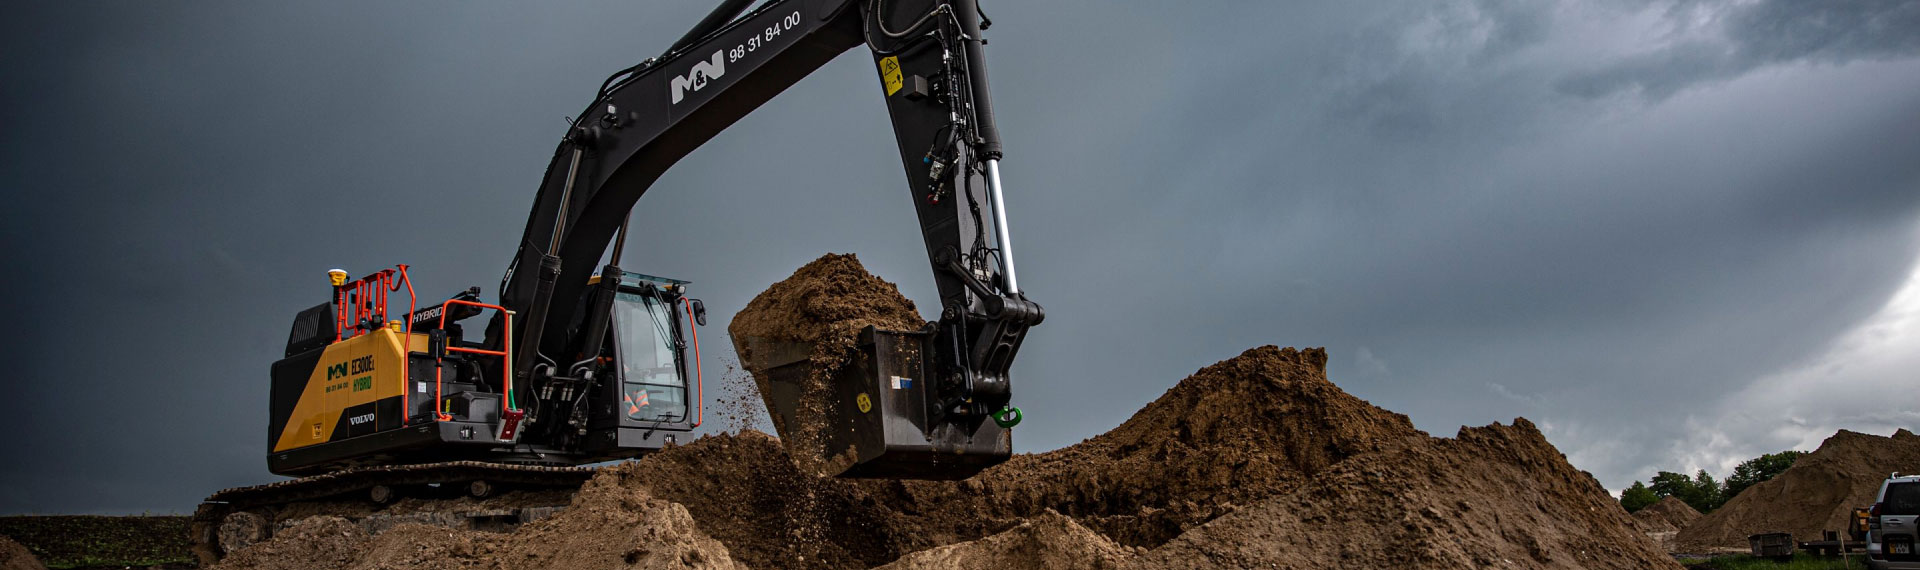 Một chiếc gầu máy xúc chắc chắn mà vẫn nhẹ nhàng được làm bằng thép Hardox® 500 Tuf, đang đào đất cát.